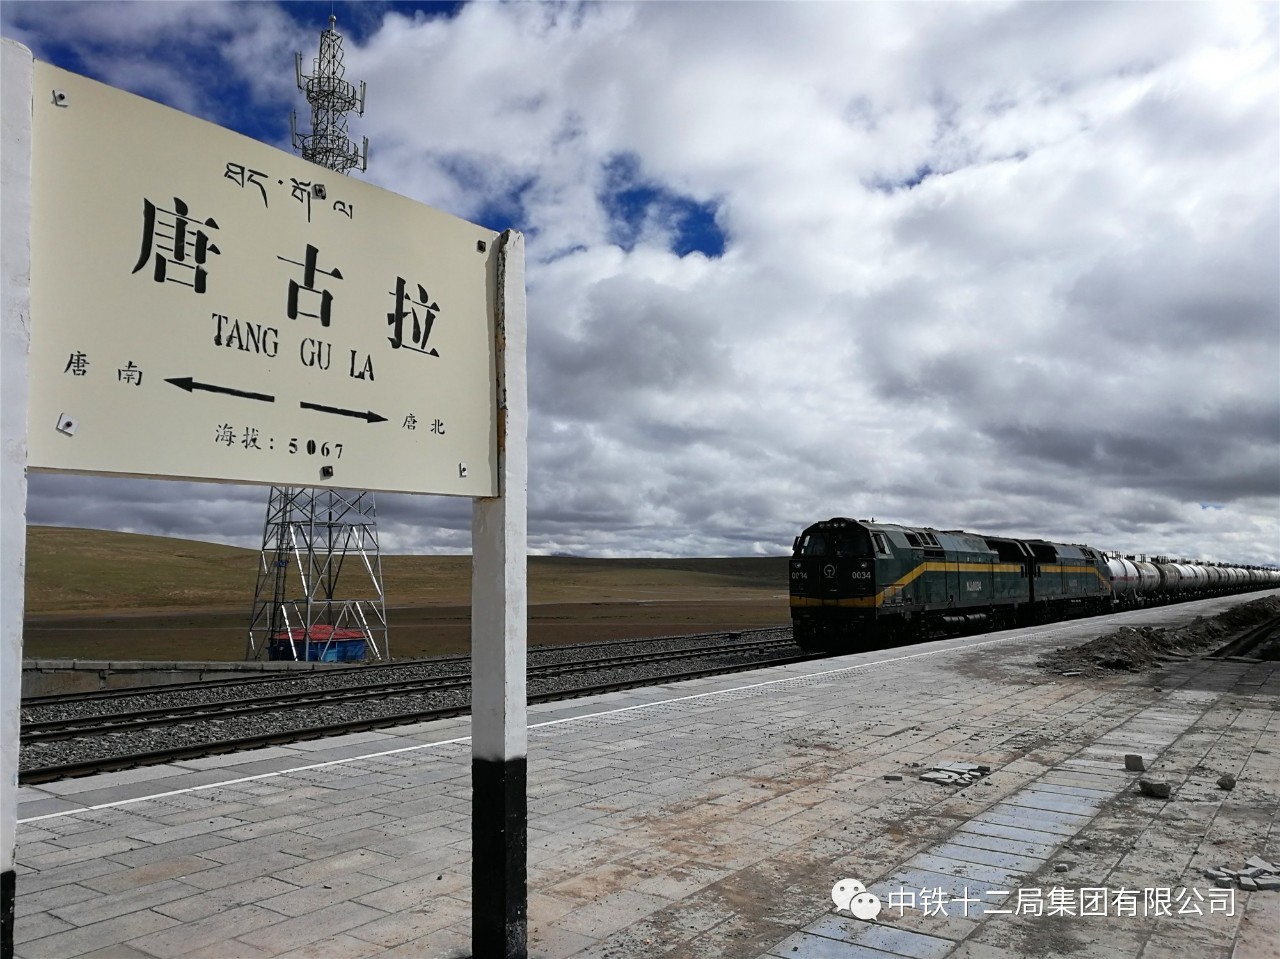 一公司,电气化公司共同施工的青藏铁路格拉段改造工程北起唐古拉车站